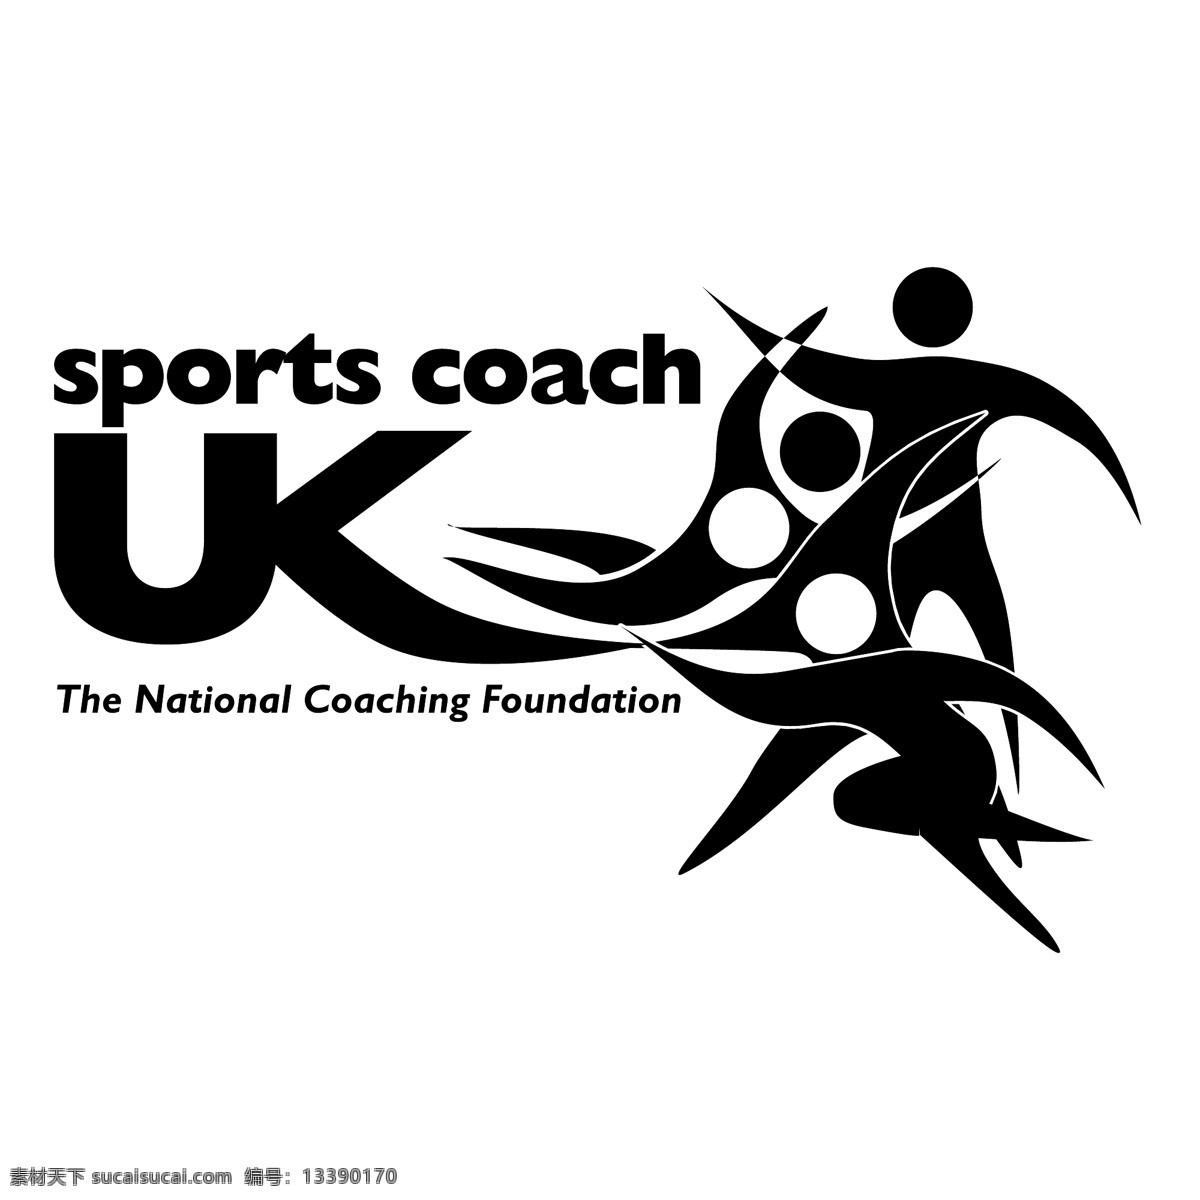 英国 体育 教练 自由 运动 标志 psd源文件 logo设计